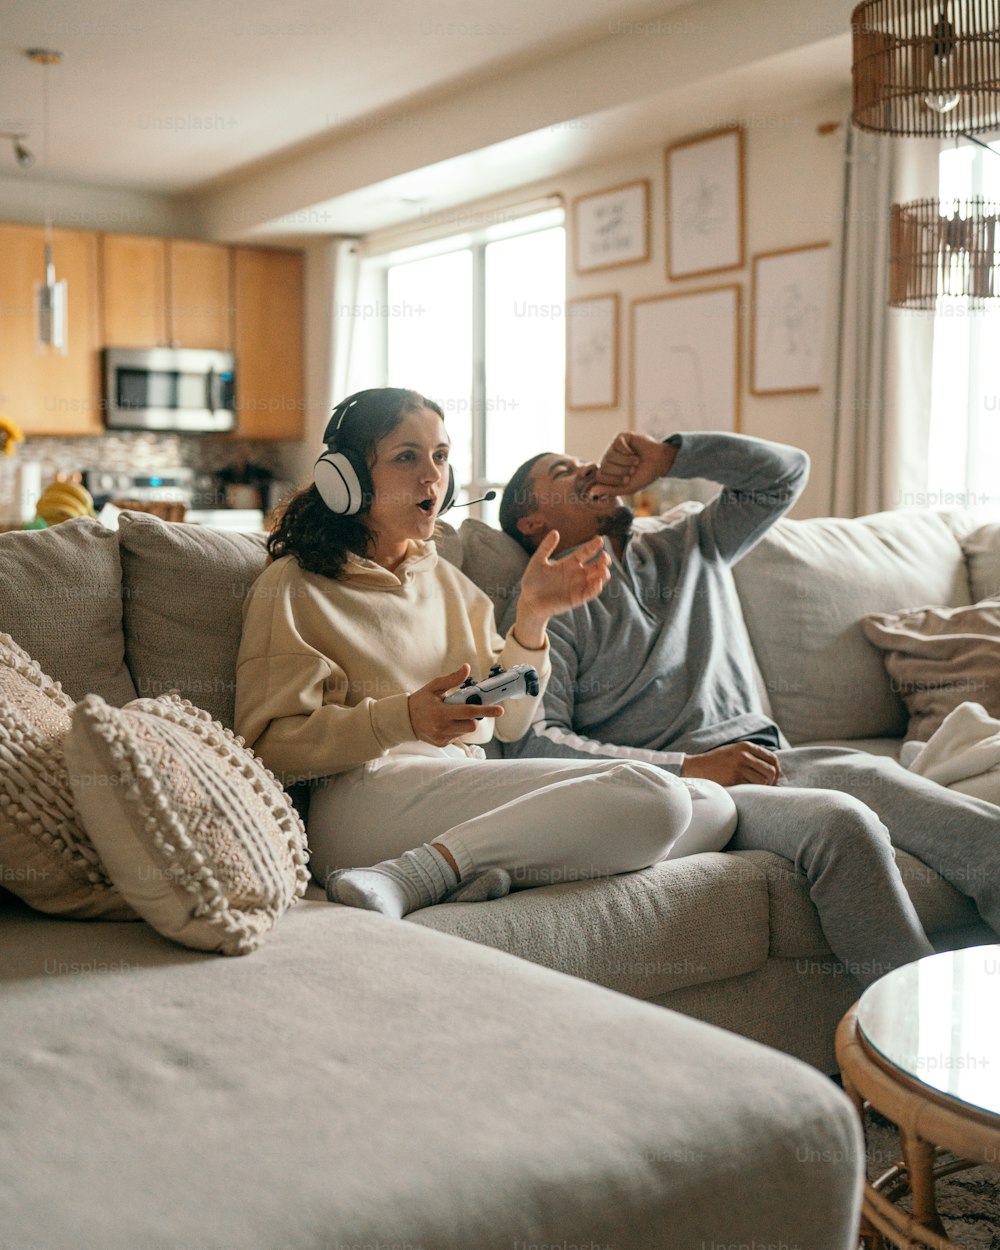 Un hombre y una mujer sentados en un sofá jugando un videojuego